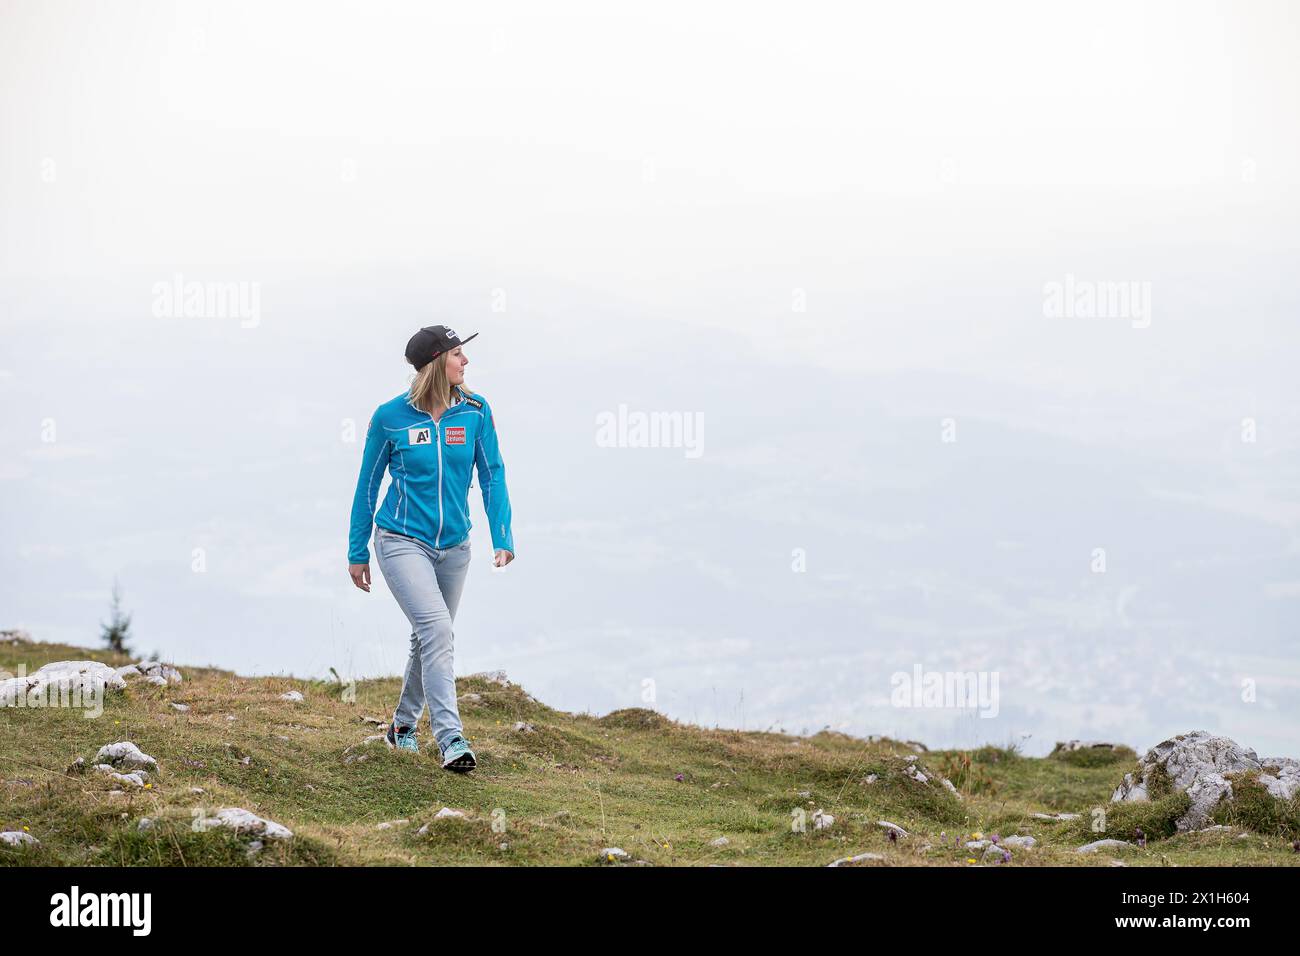 La sciatrice austriaca Cornelia Hütter, posa durante un servizio fotografico a St. Redegund su Schöckl vicino a Graz, Austria, il 26 settembre 2016. IMMAGINE: Cornelia Hütter - 20160926 PD2215 - Rechteinfo: Rights Managed (RM) Foto Stock